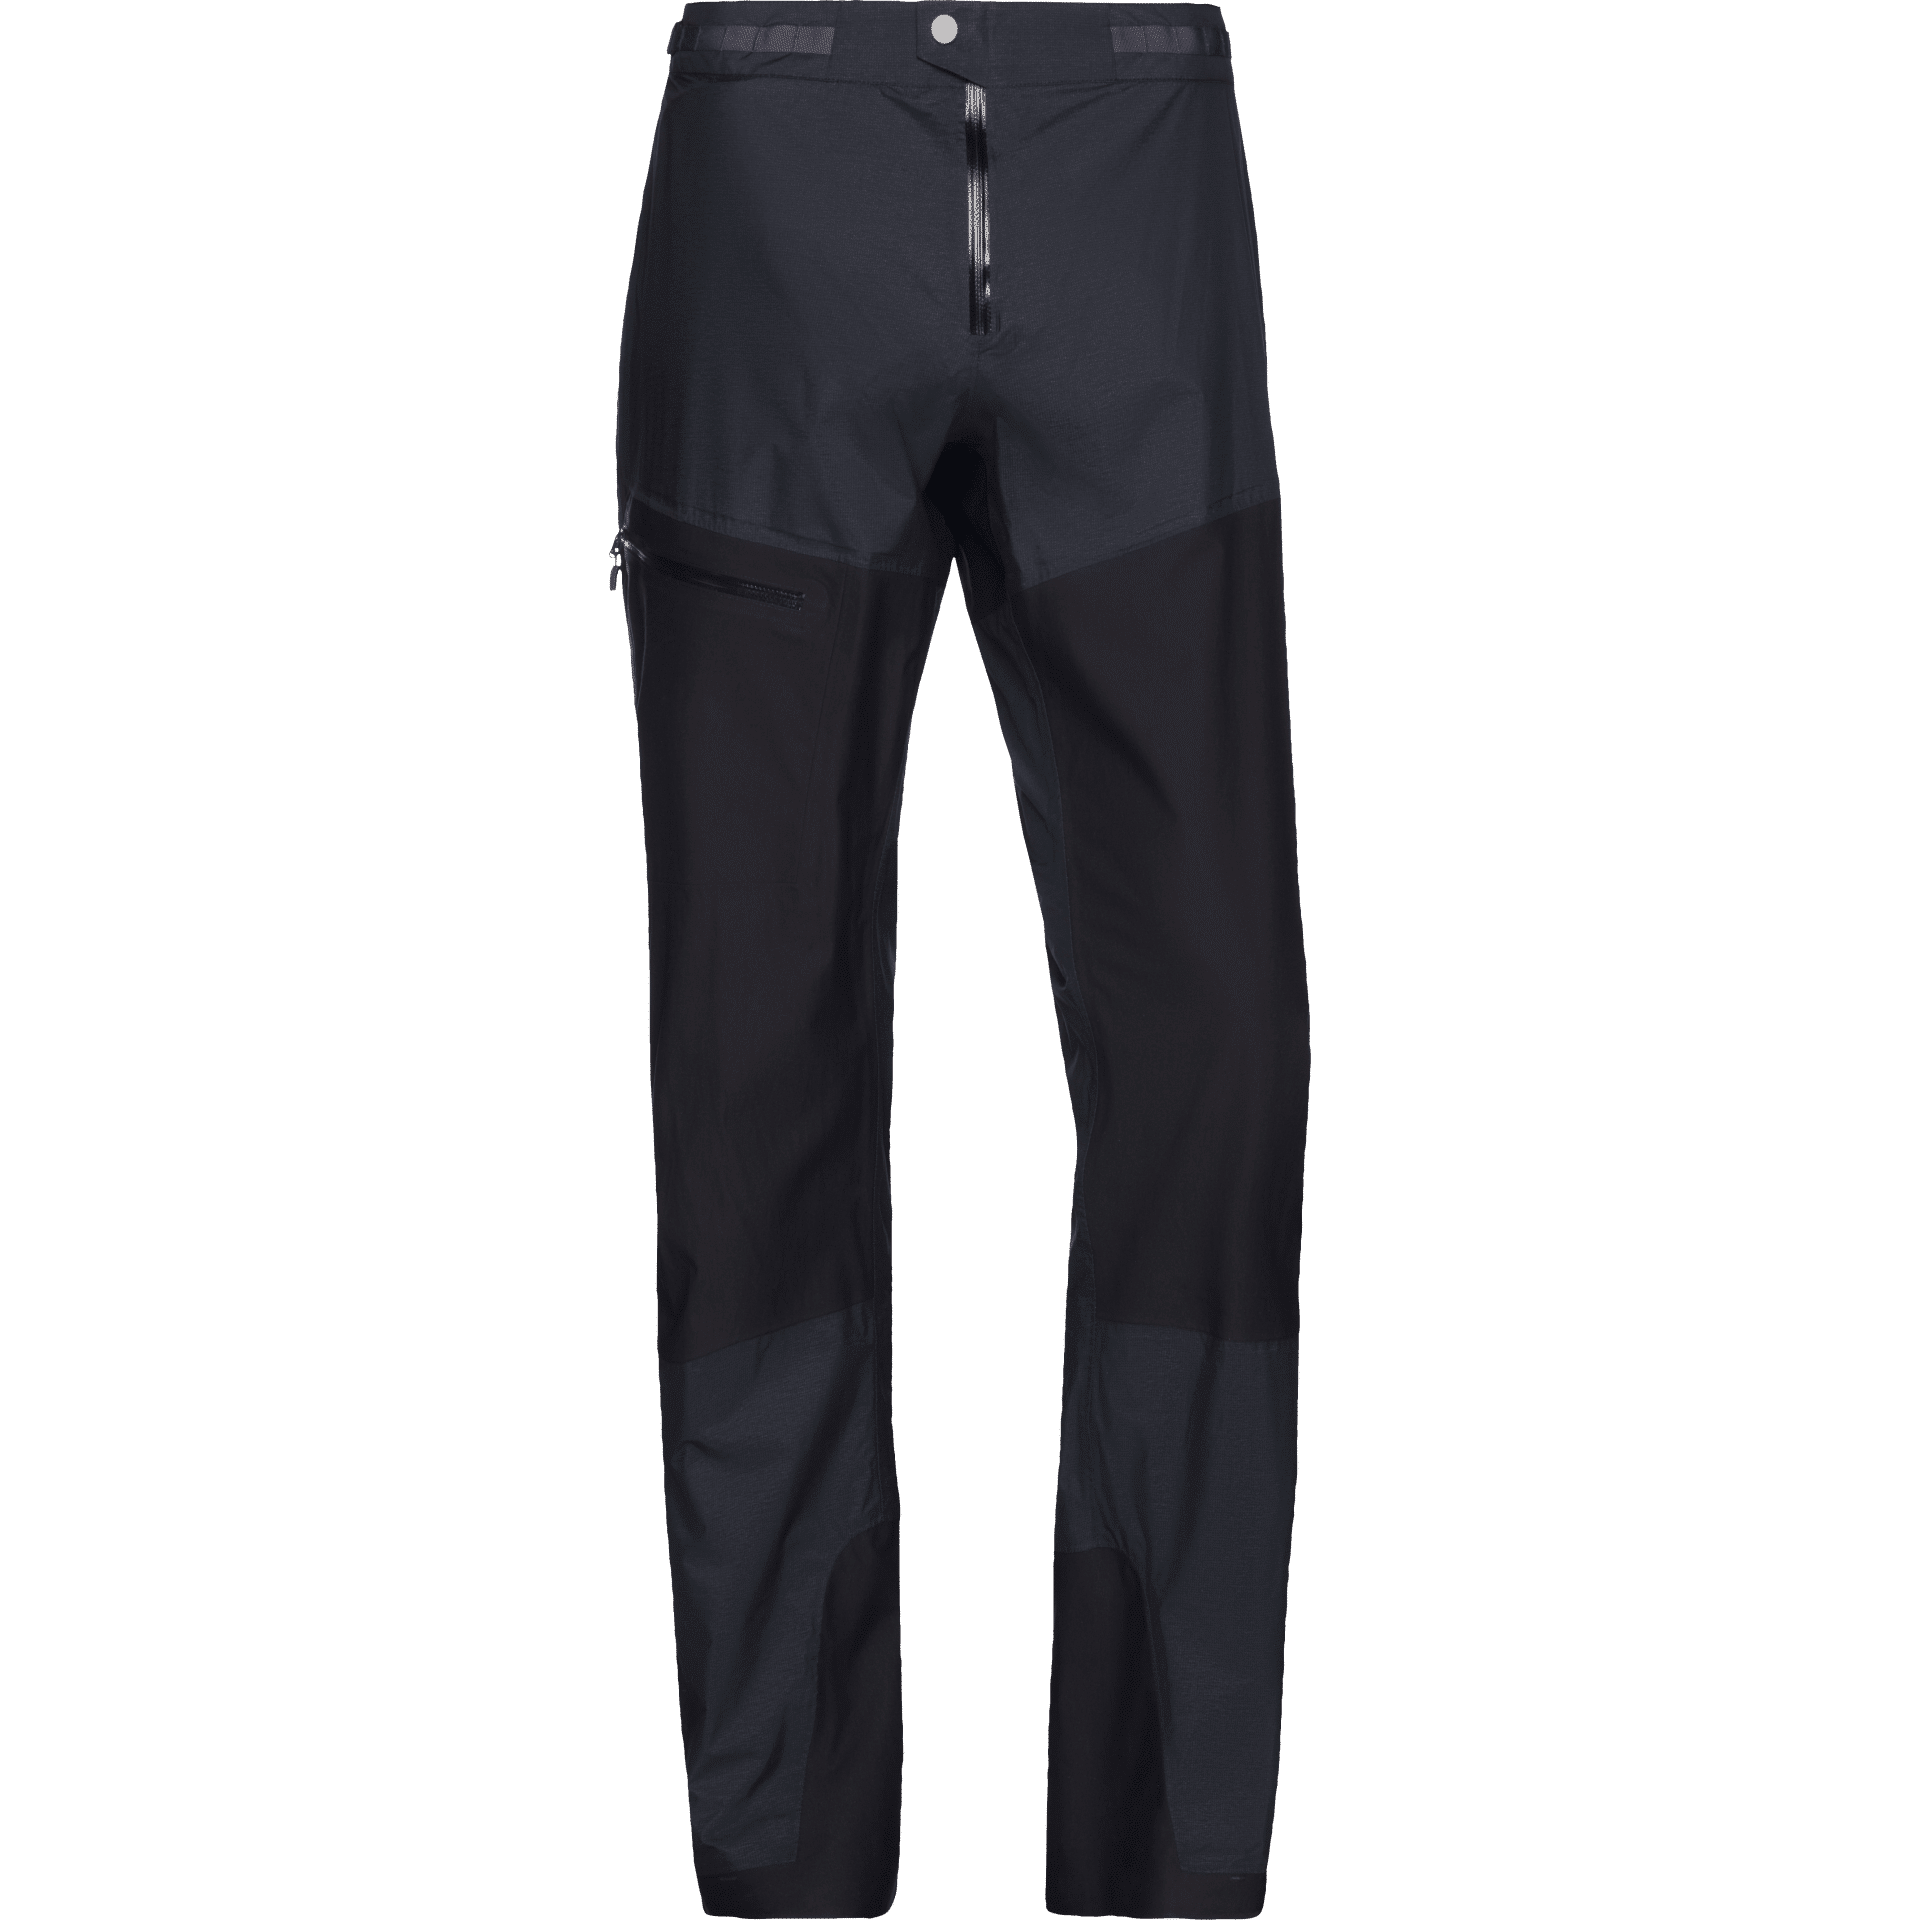 Norrøna - Bitihorn Dri1 Pants - Pantaloni impermeabili - Uomo